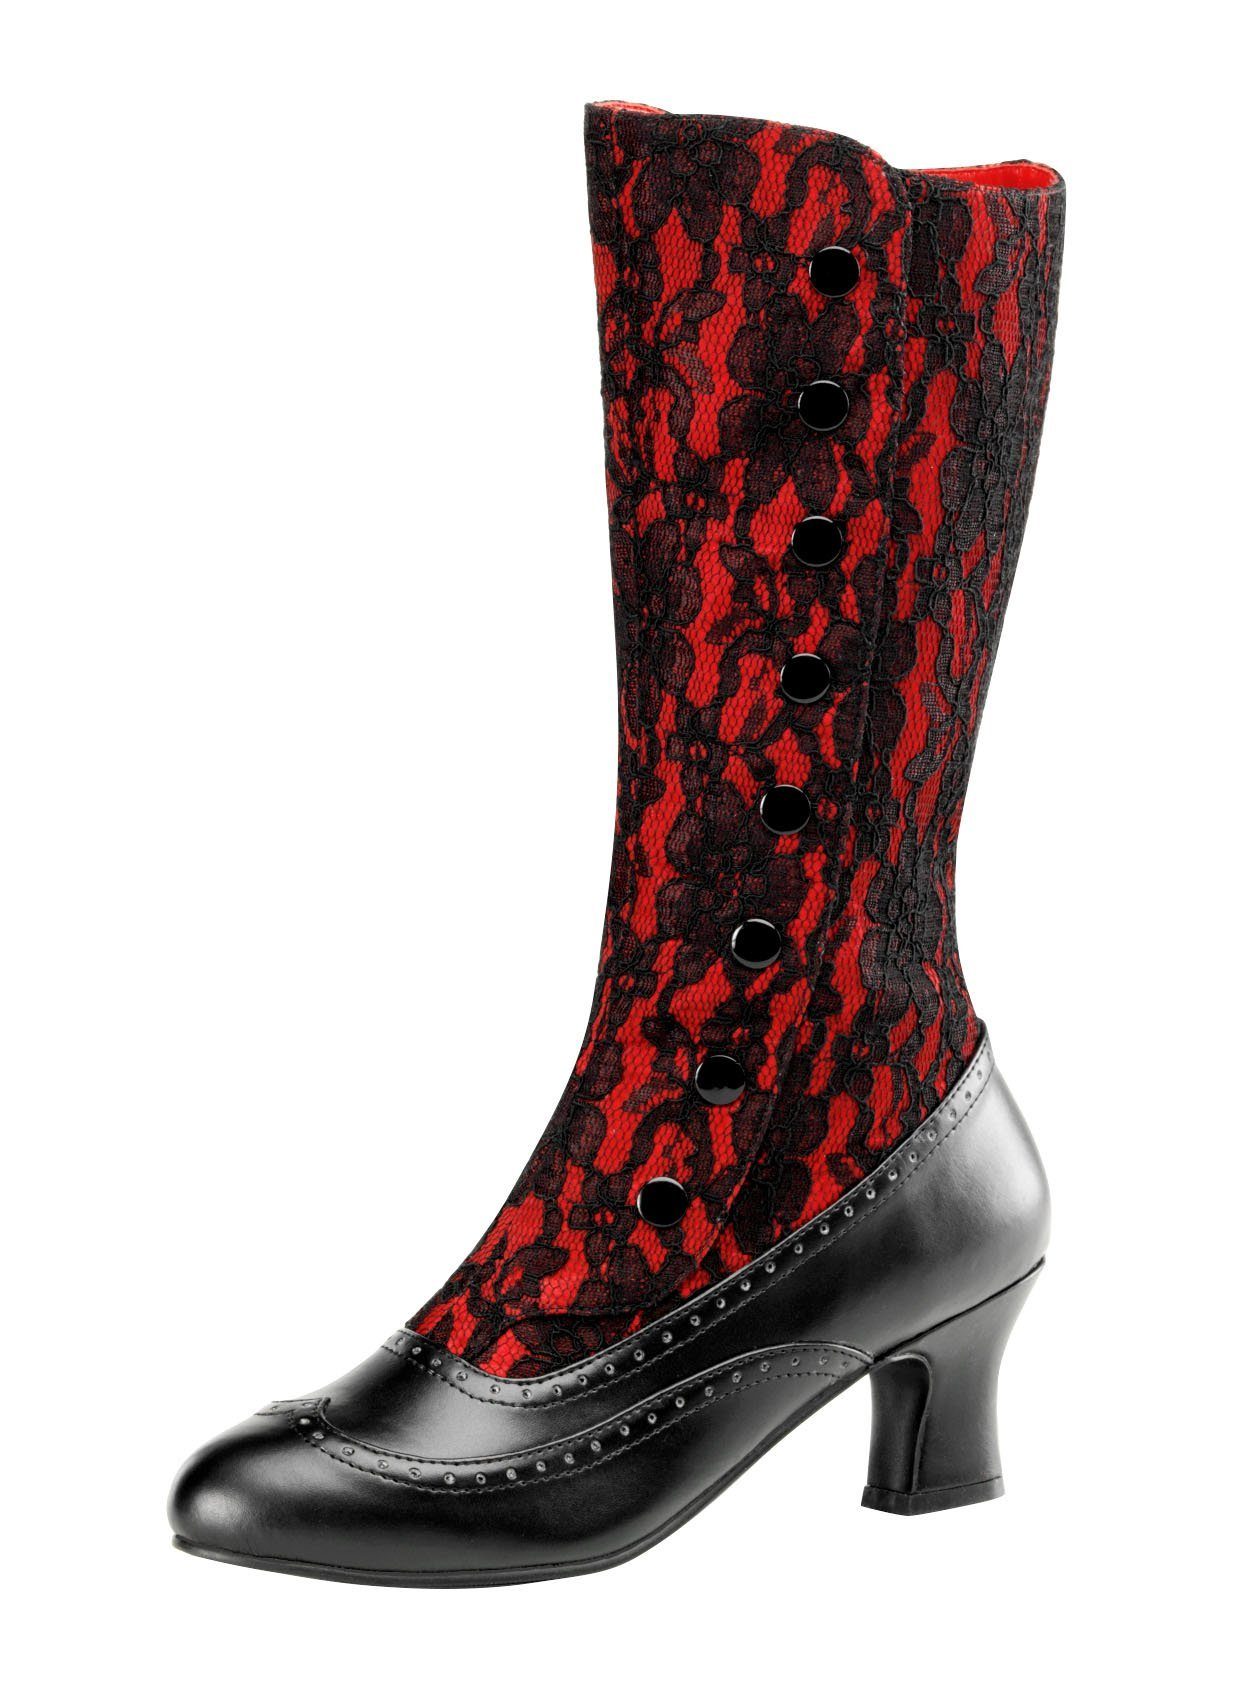 Pleaser Kostüm Gothic Stiefel rot online kaufen | OTTO